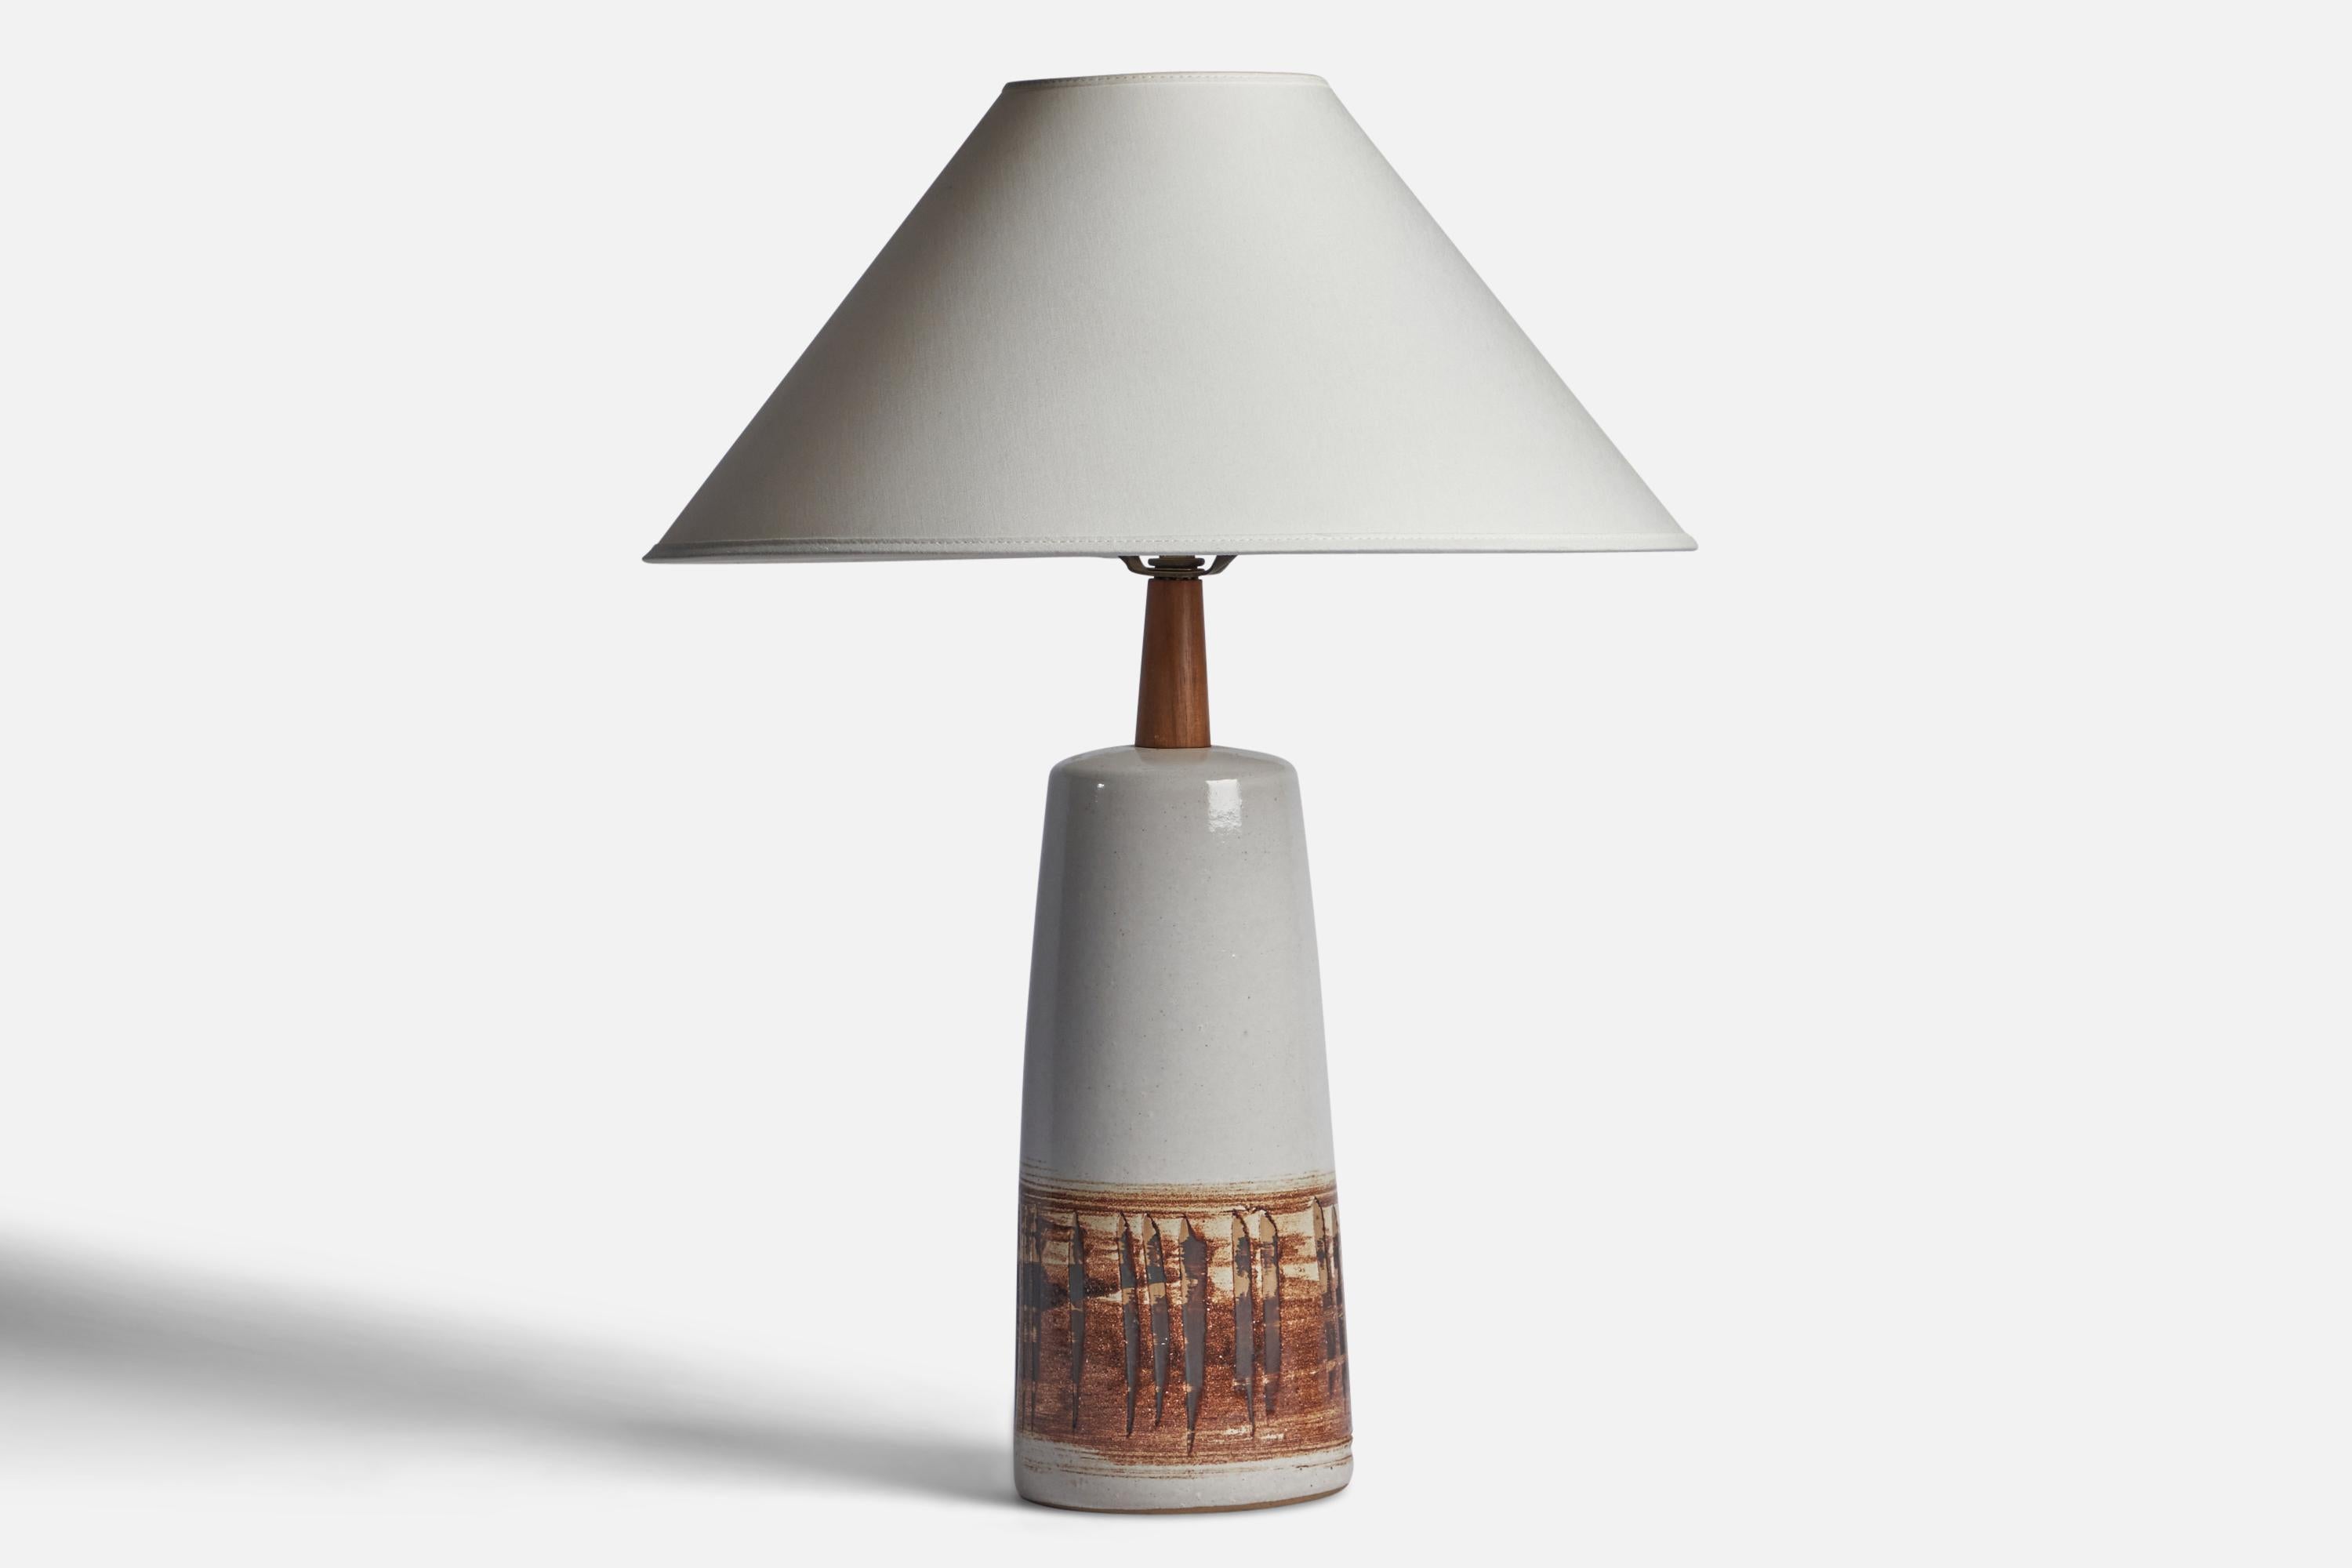 Lampe de table en céramique et noyer blanc cassé et émaillé brun, conçue par Jane & Gordon Martz et produite par Marshall Studios, États-Unis, années 1960.

Dimensions de la lampe (pouces) : 16.75